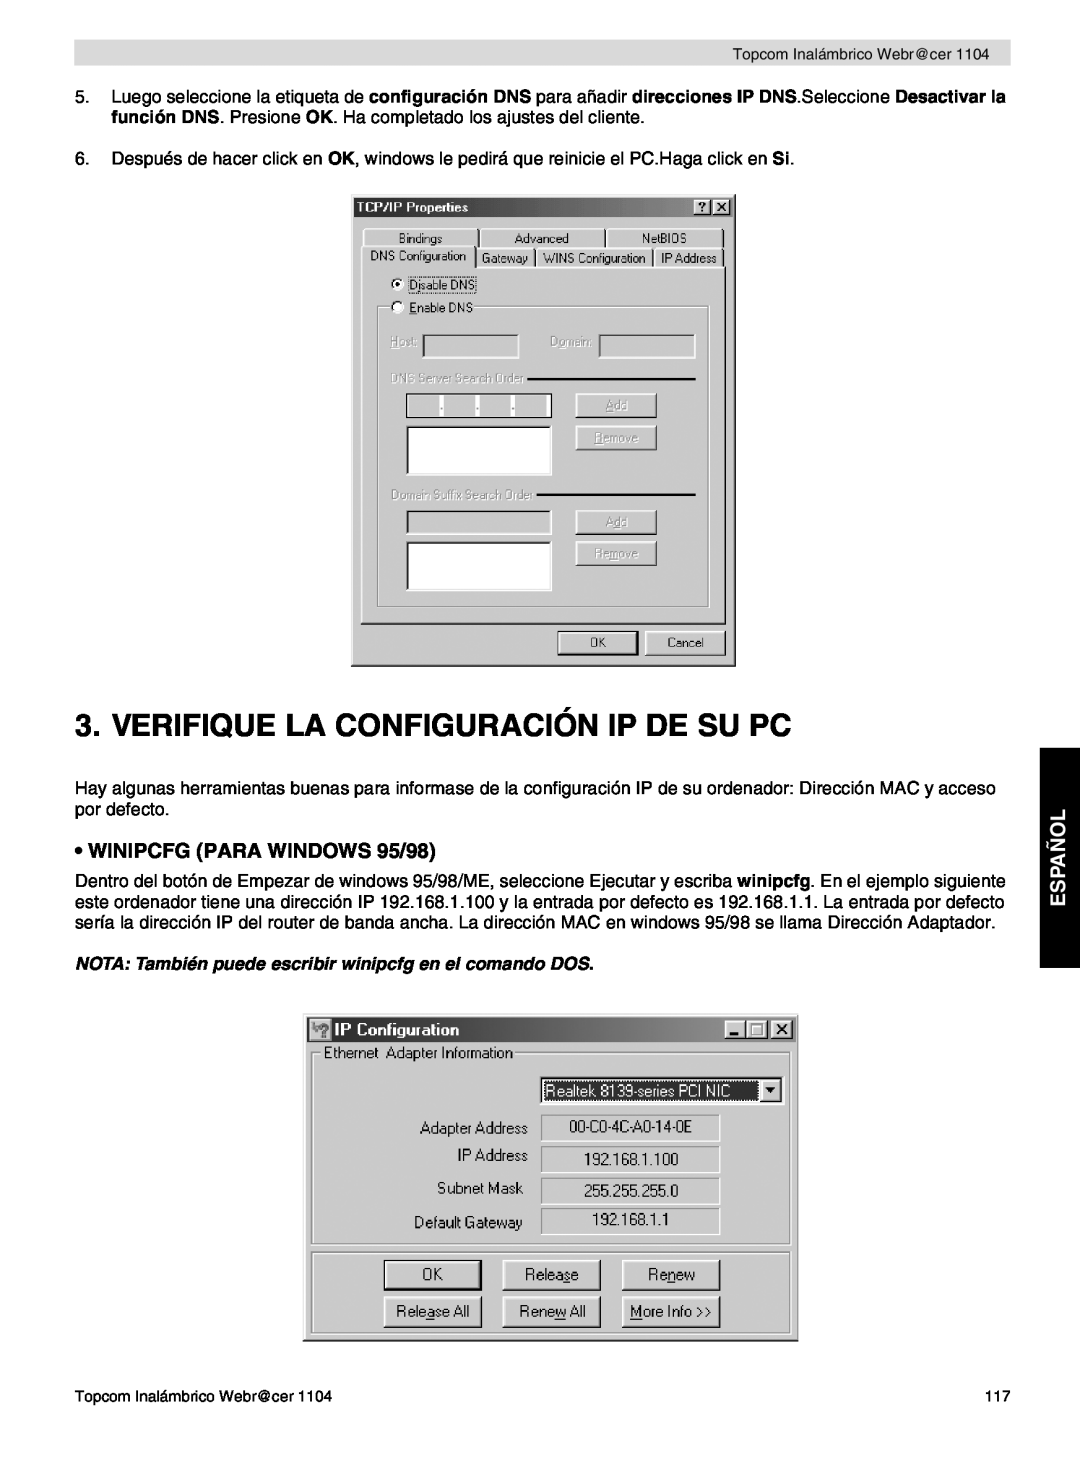 Topcom 1104 manual do utilizador Verifique La Configuración Ip De Su Pc, WINIPCFG PARA WINDOWS 95/98, Español 